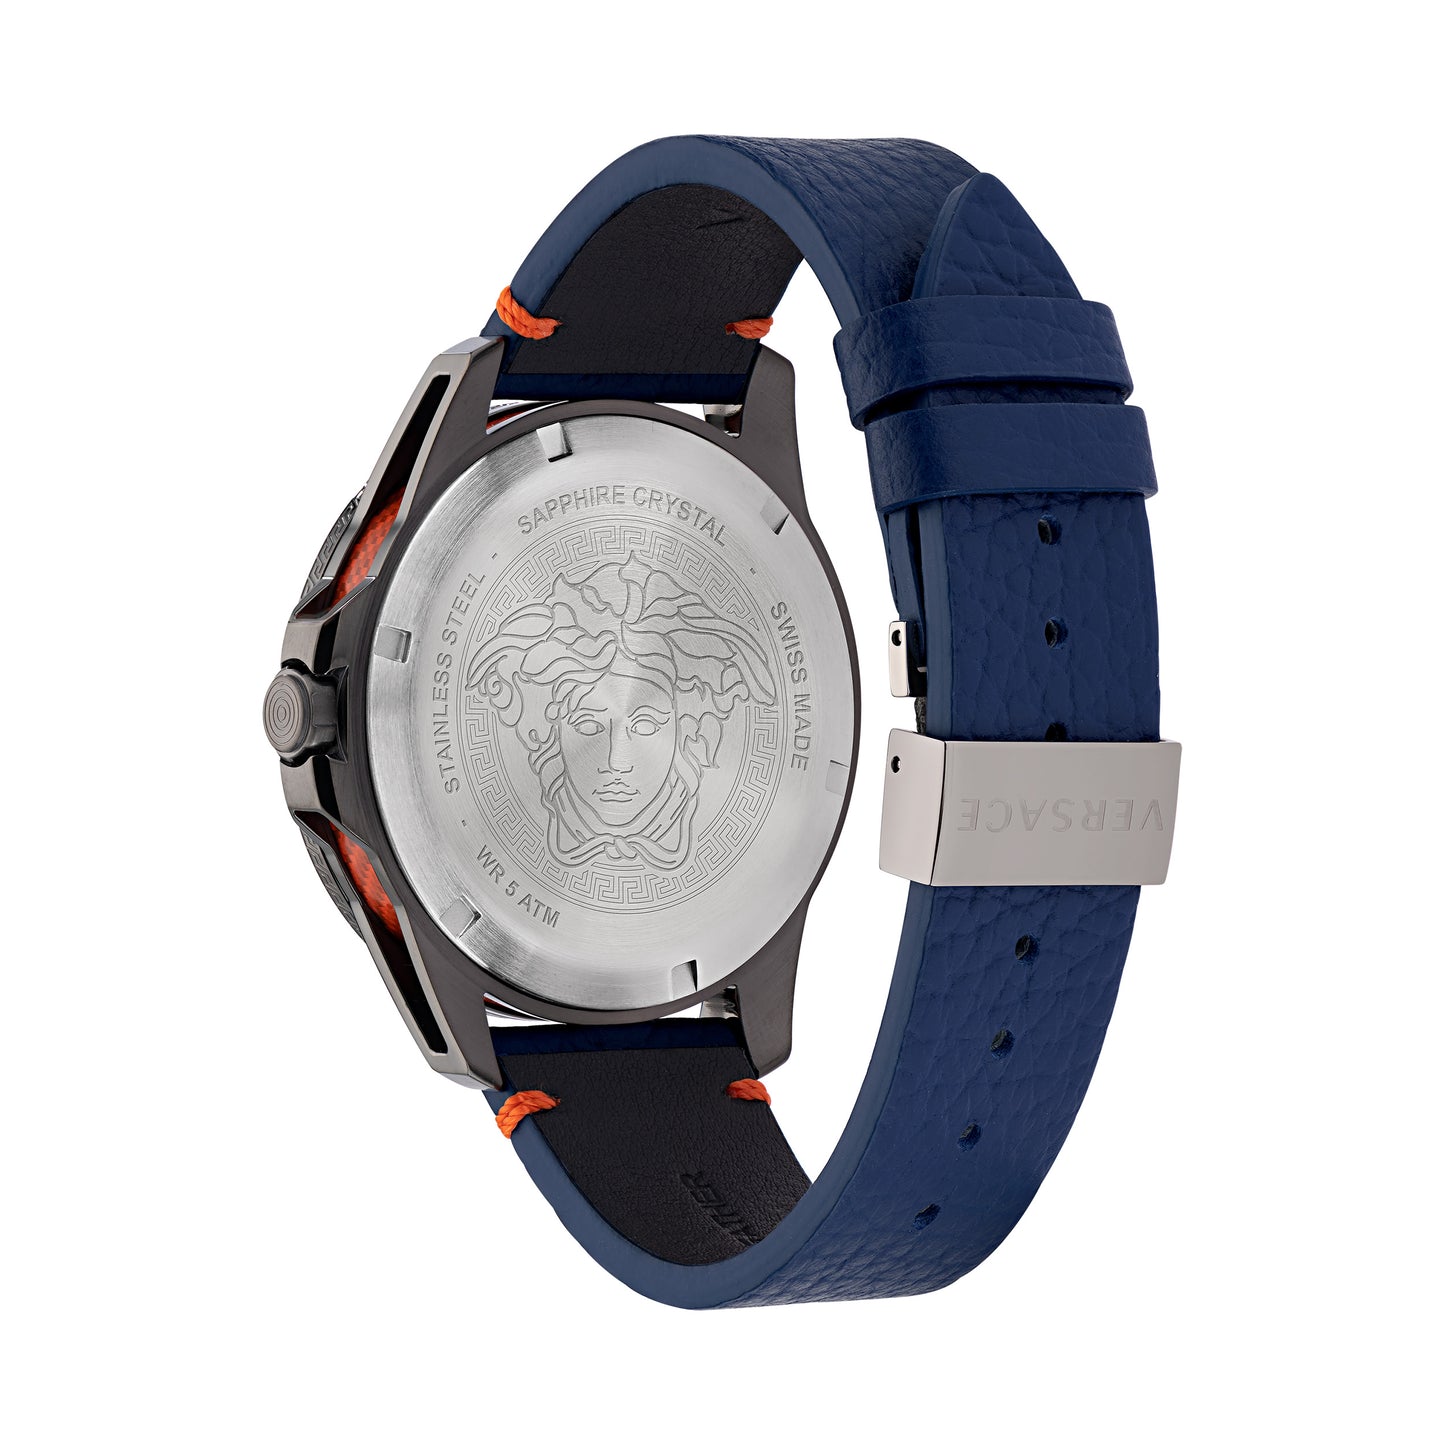 Versace Wrist Watch Men Blue Dial - Ve2W00222